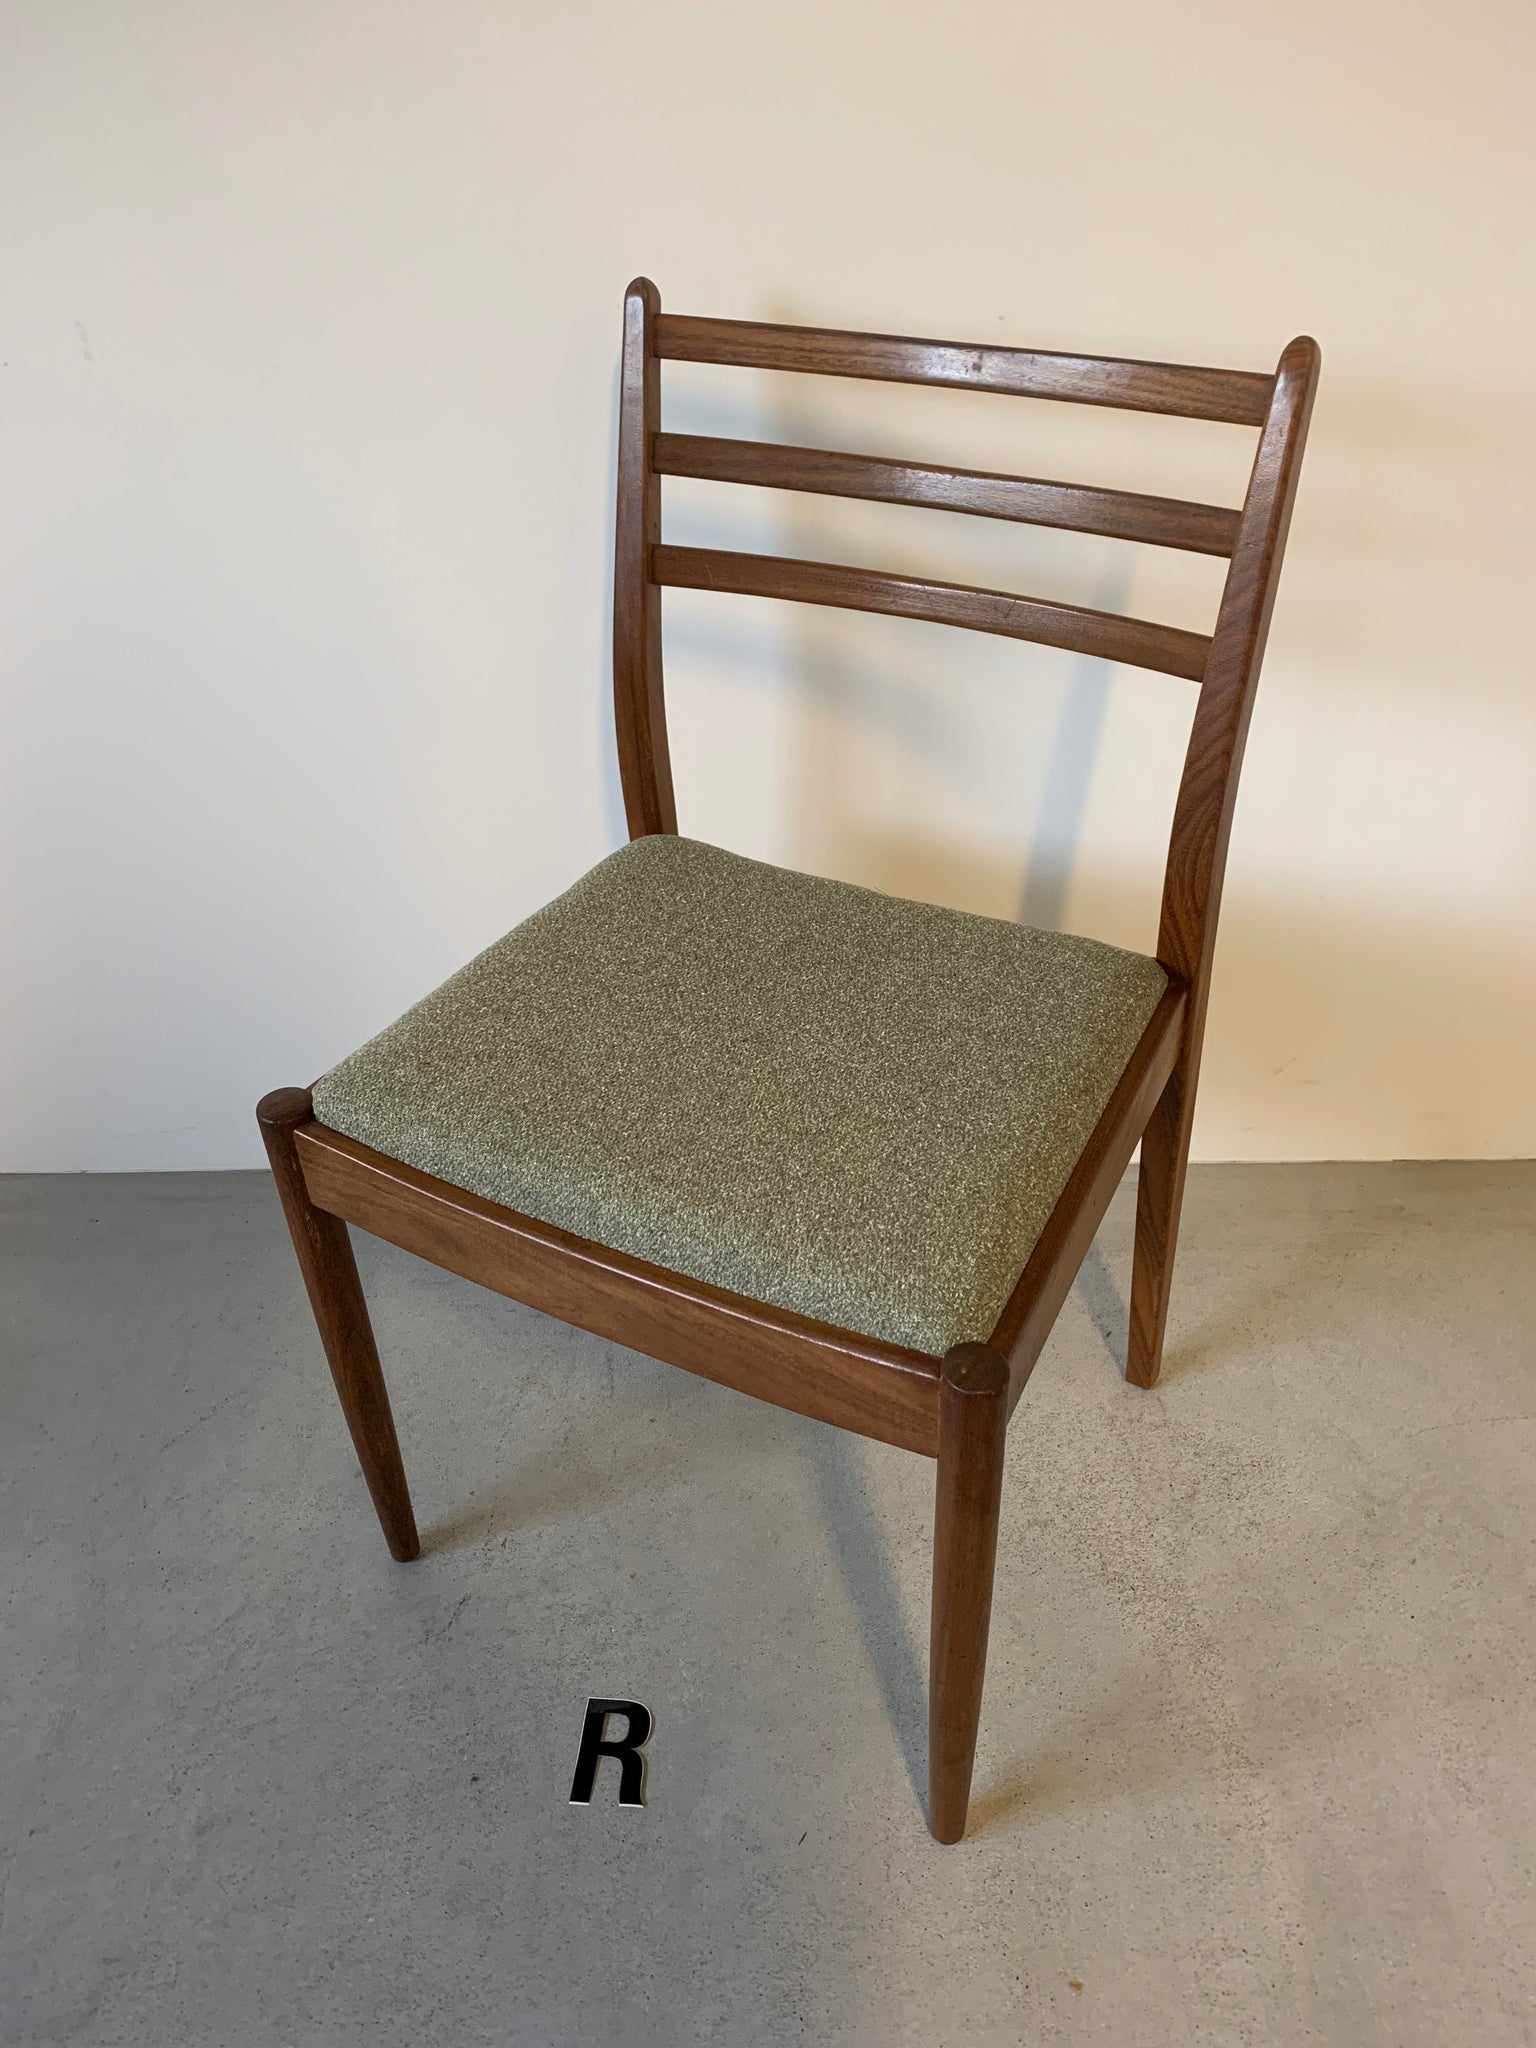 ジープラン チェア４脚セット / g-plan chairs set of 4 #0240